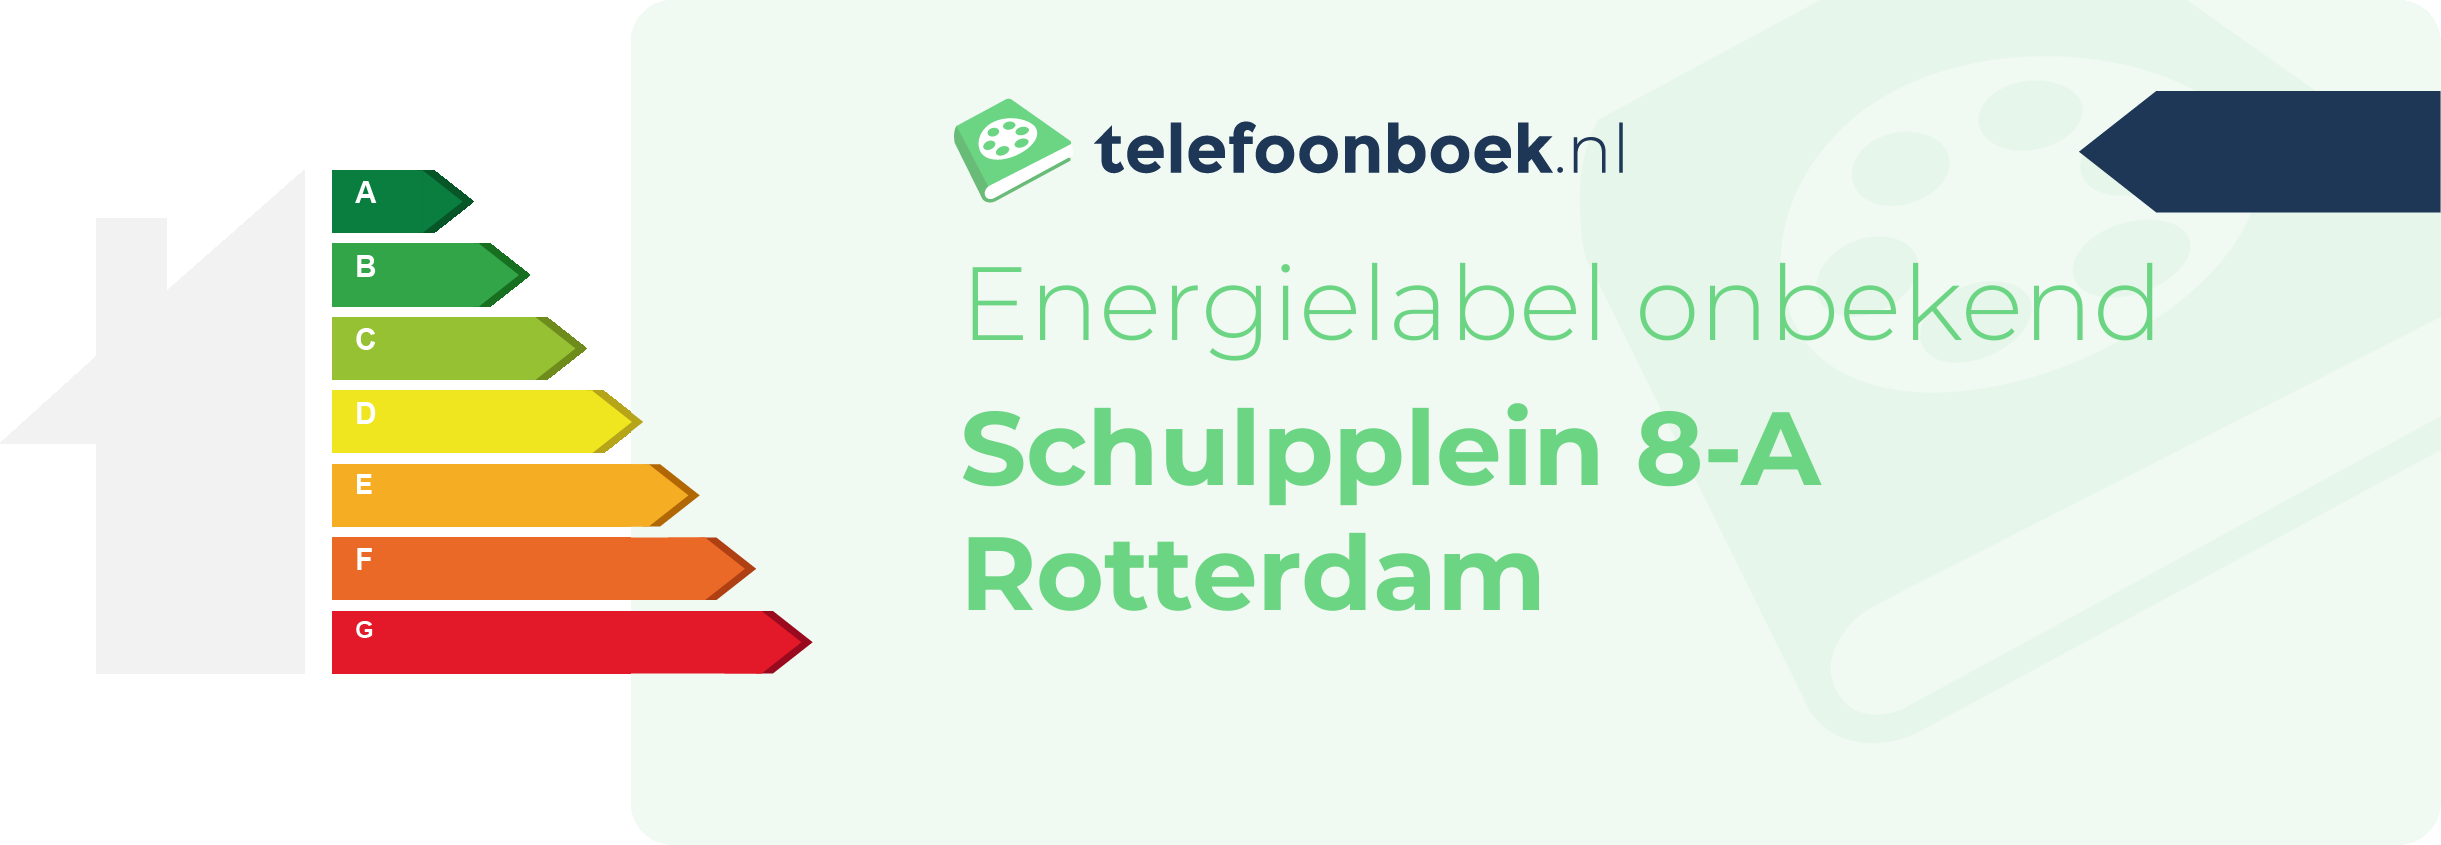 Energielabel Schulpplein 8-A Rotterdam